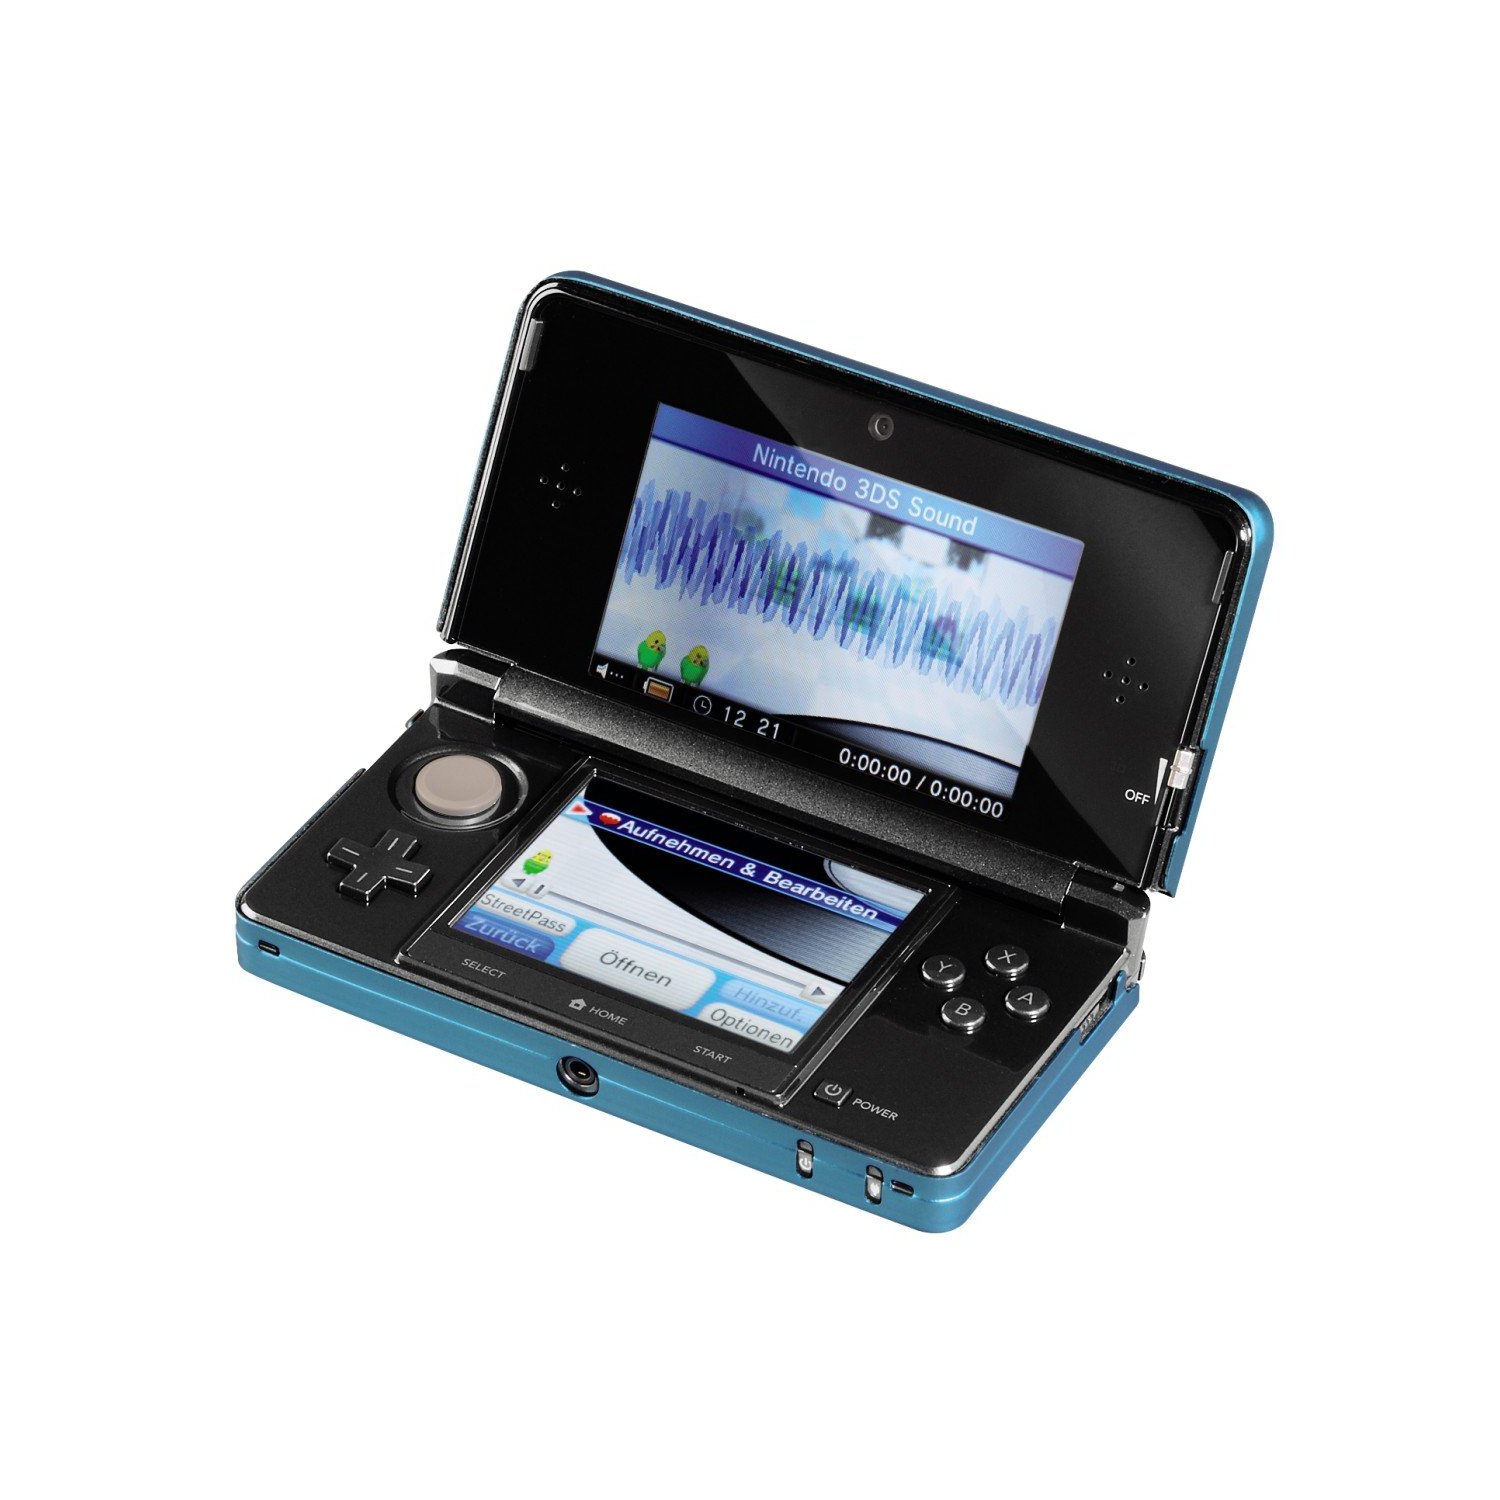 Boîtier métallique bleue pour 3DS